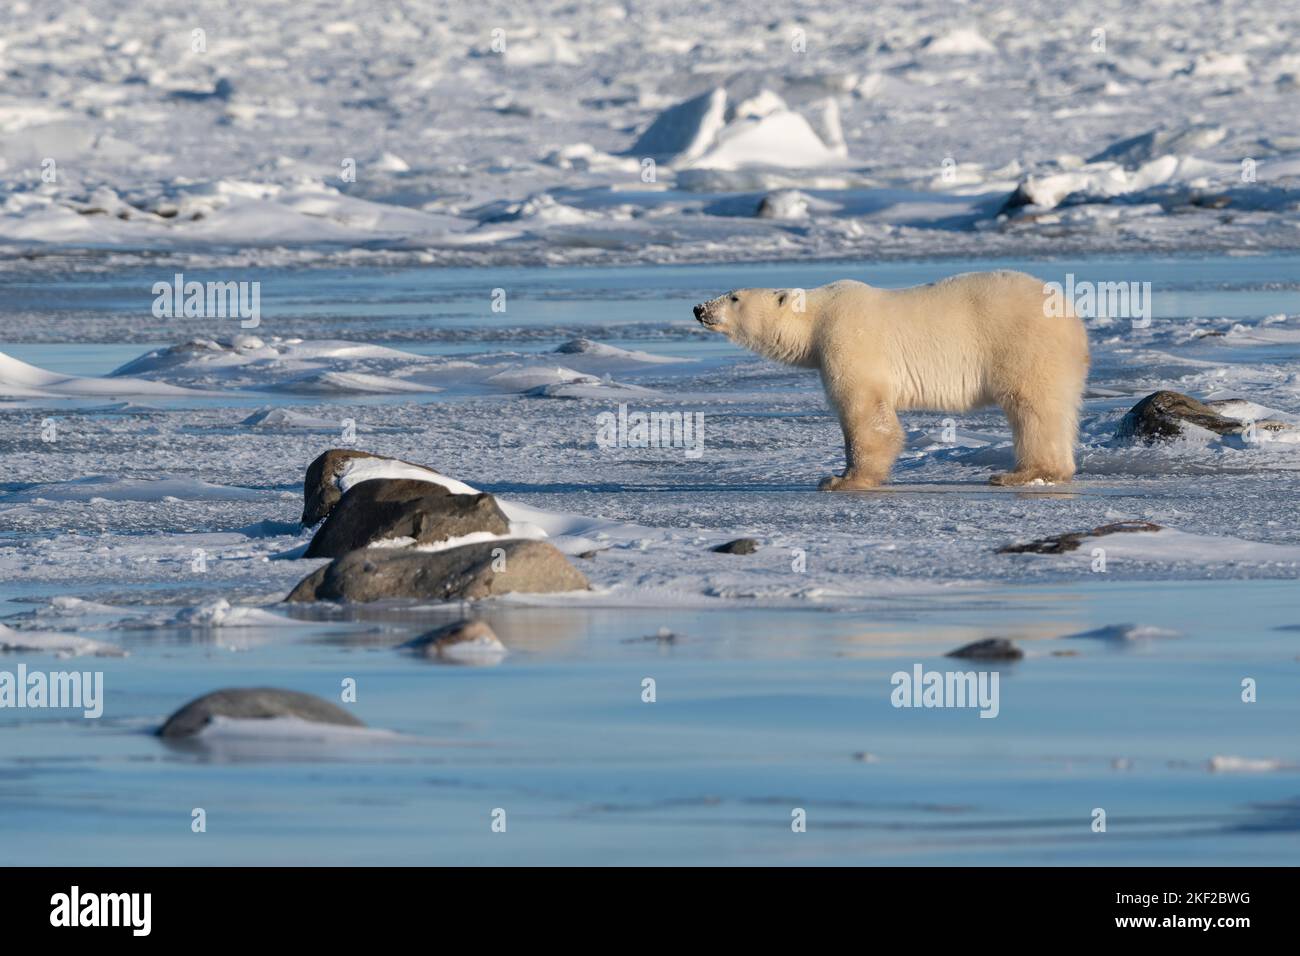 Ours polaire sur glace, baie d'Hudson Banque D'Images